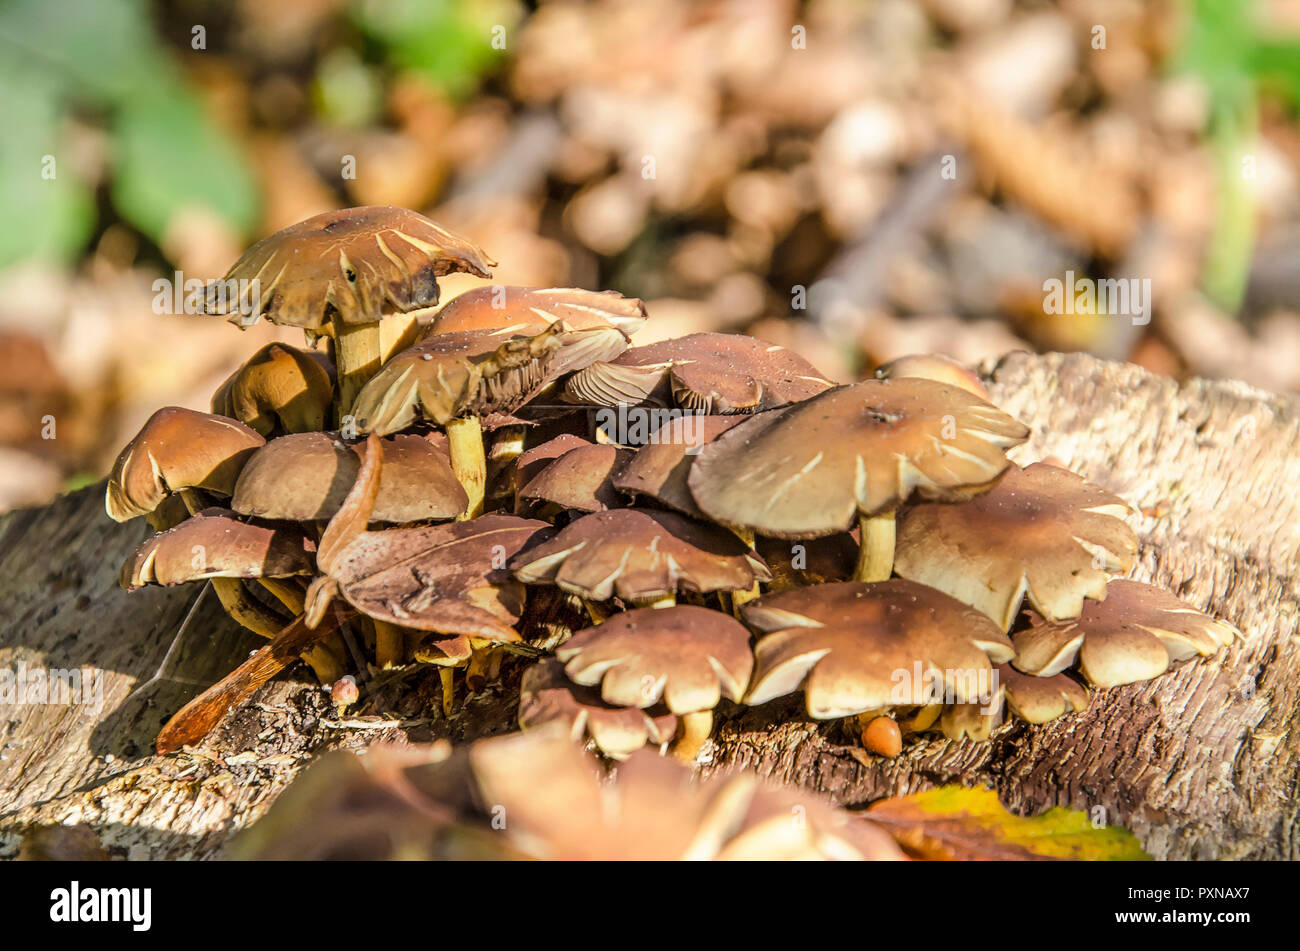 Un gruppo di piccoli funghi marrone con tappi piatti che cresce su una superficie di legno in un giardino in autunno Foto Stock